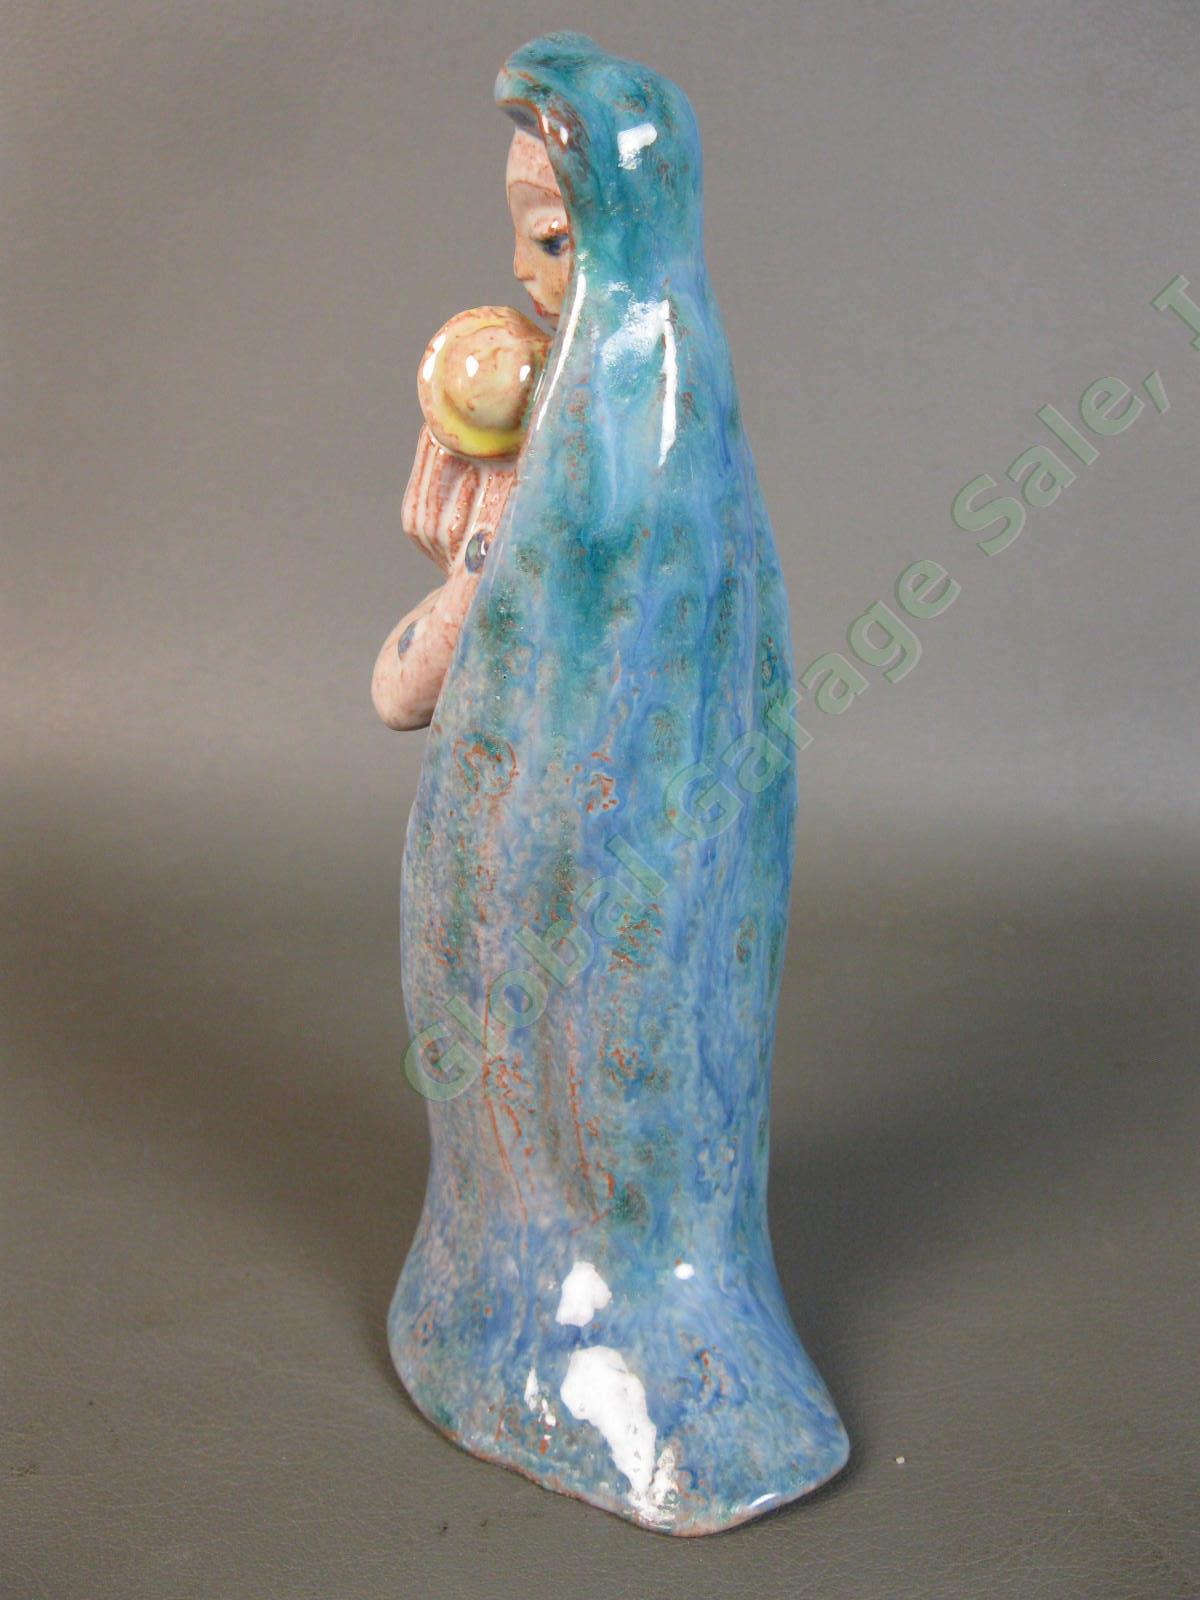 RARE 1942 Edris Eckhardt Sculpture Madonna and Child Ceramic Glaze WPA Ceveland 1